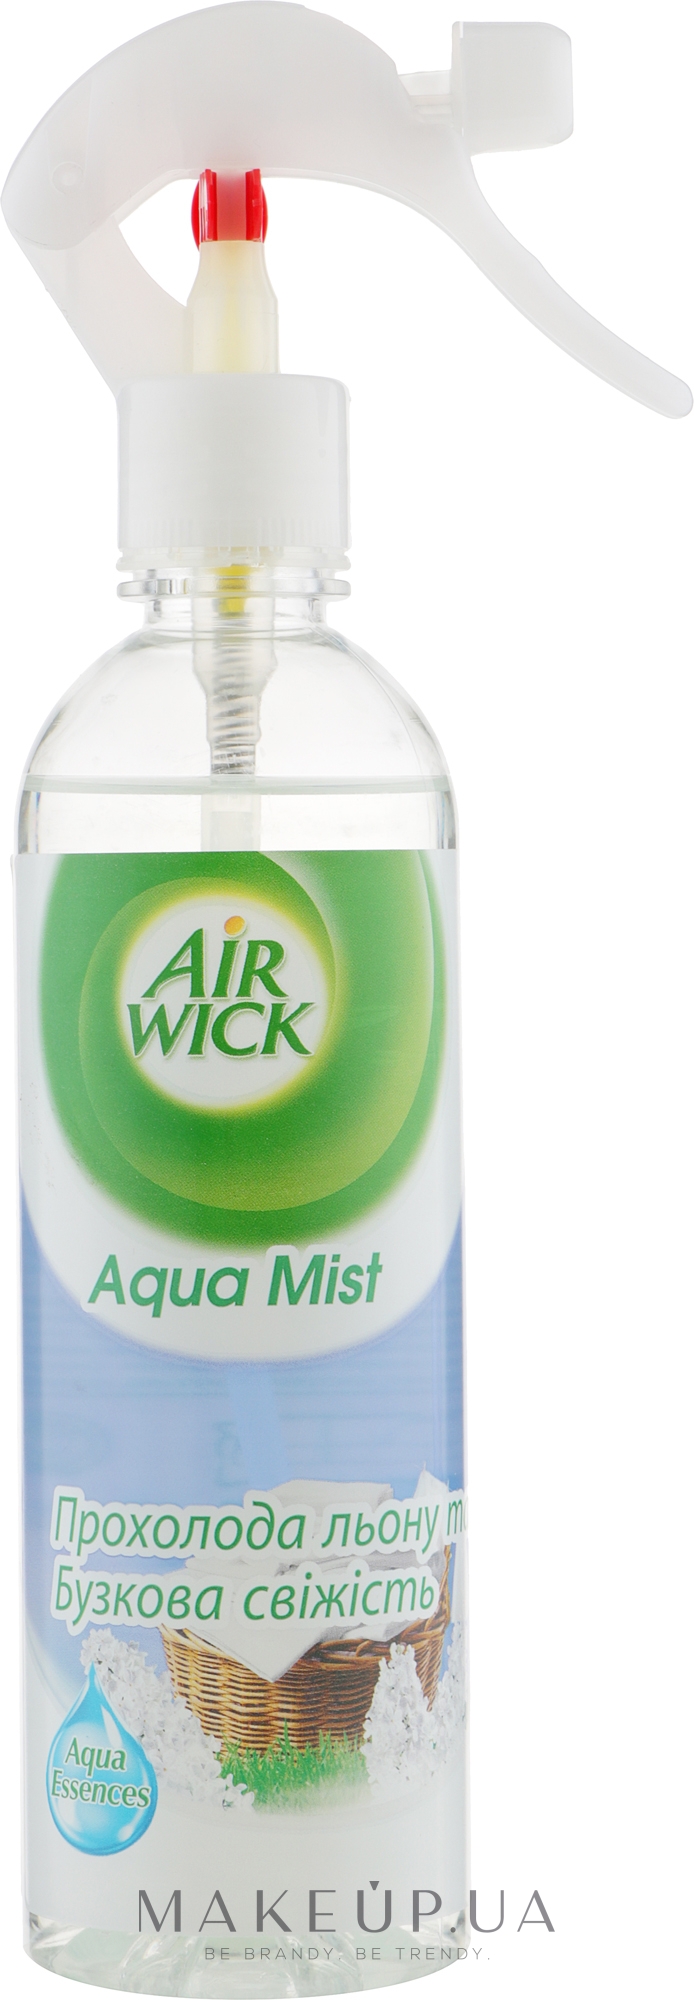 Освежитель воздуха "Прохлада льна и Свежесть сирени" - Air Wick Aqua Mist — фото 345ml